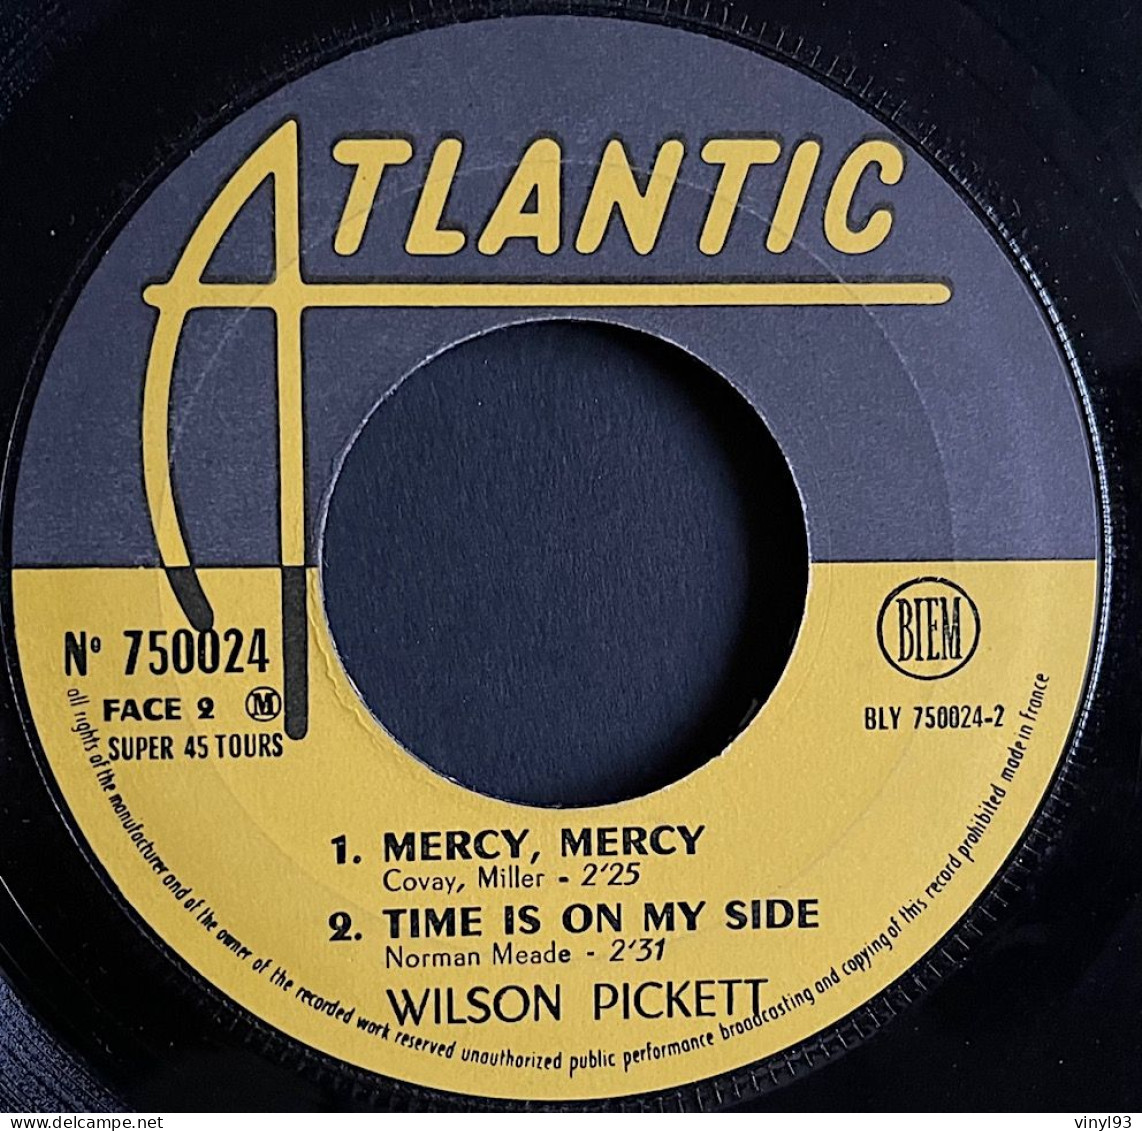 1967 - 7ème EP 45T De Wilson Pickett "I Found A Love" - Atlantic 750 024M - Sonstige - Englische Musik